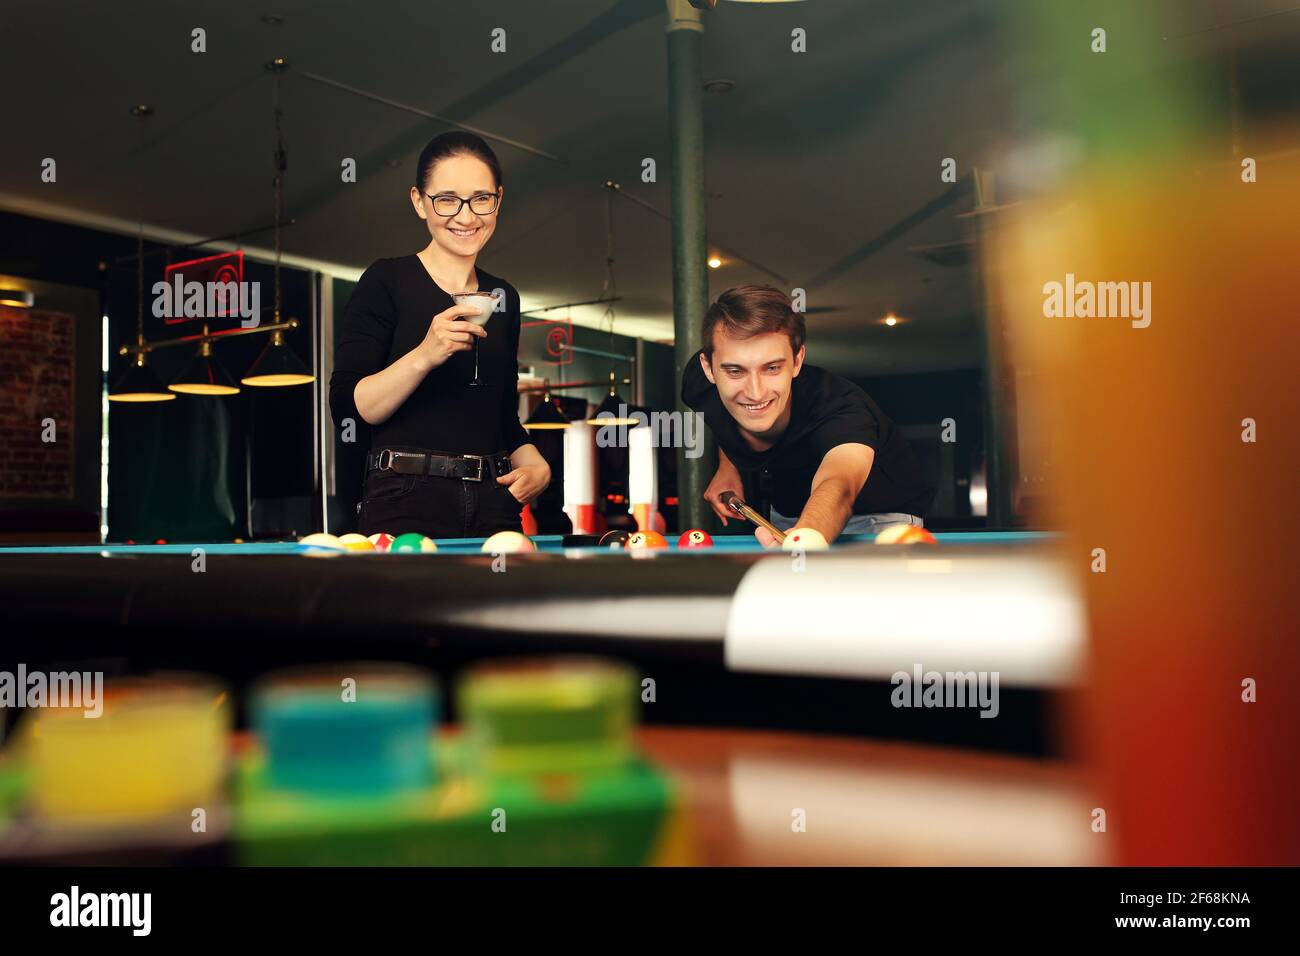 Giocando a biliardo, il giocatore mette le palle sul tavolo da biliardo. Foto Stock